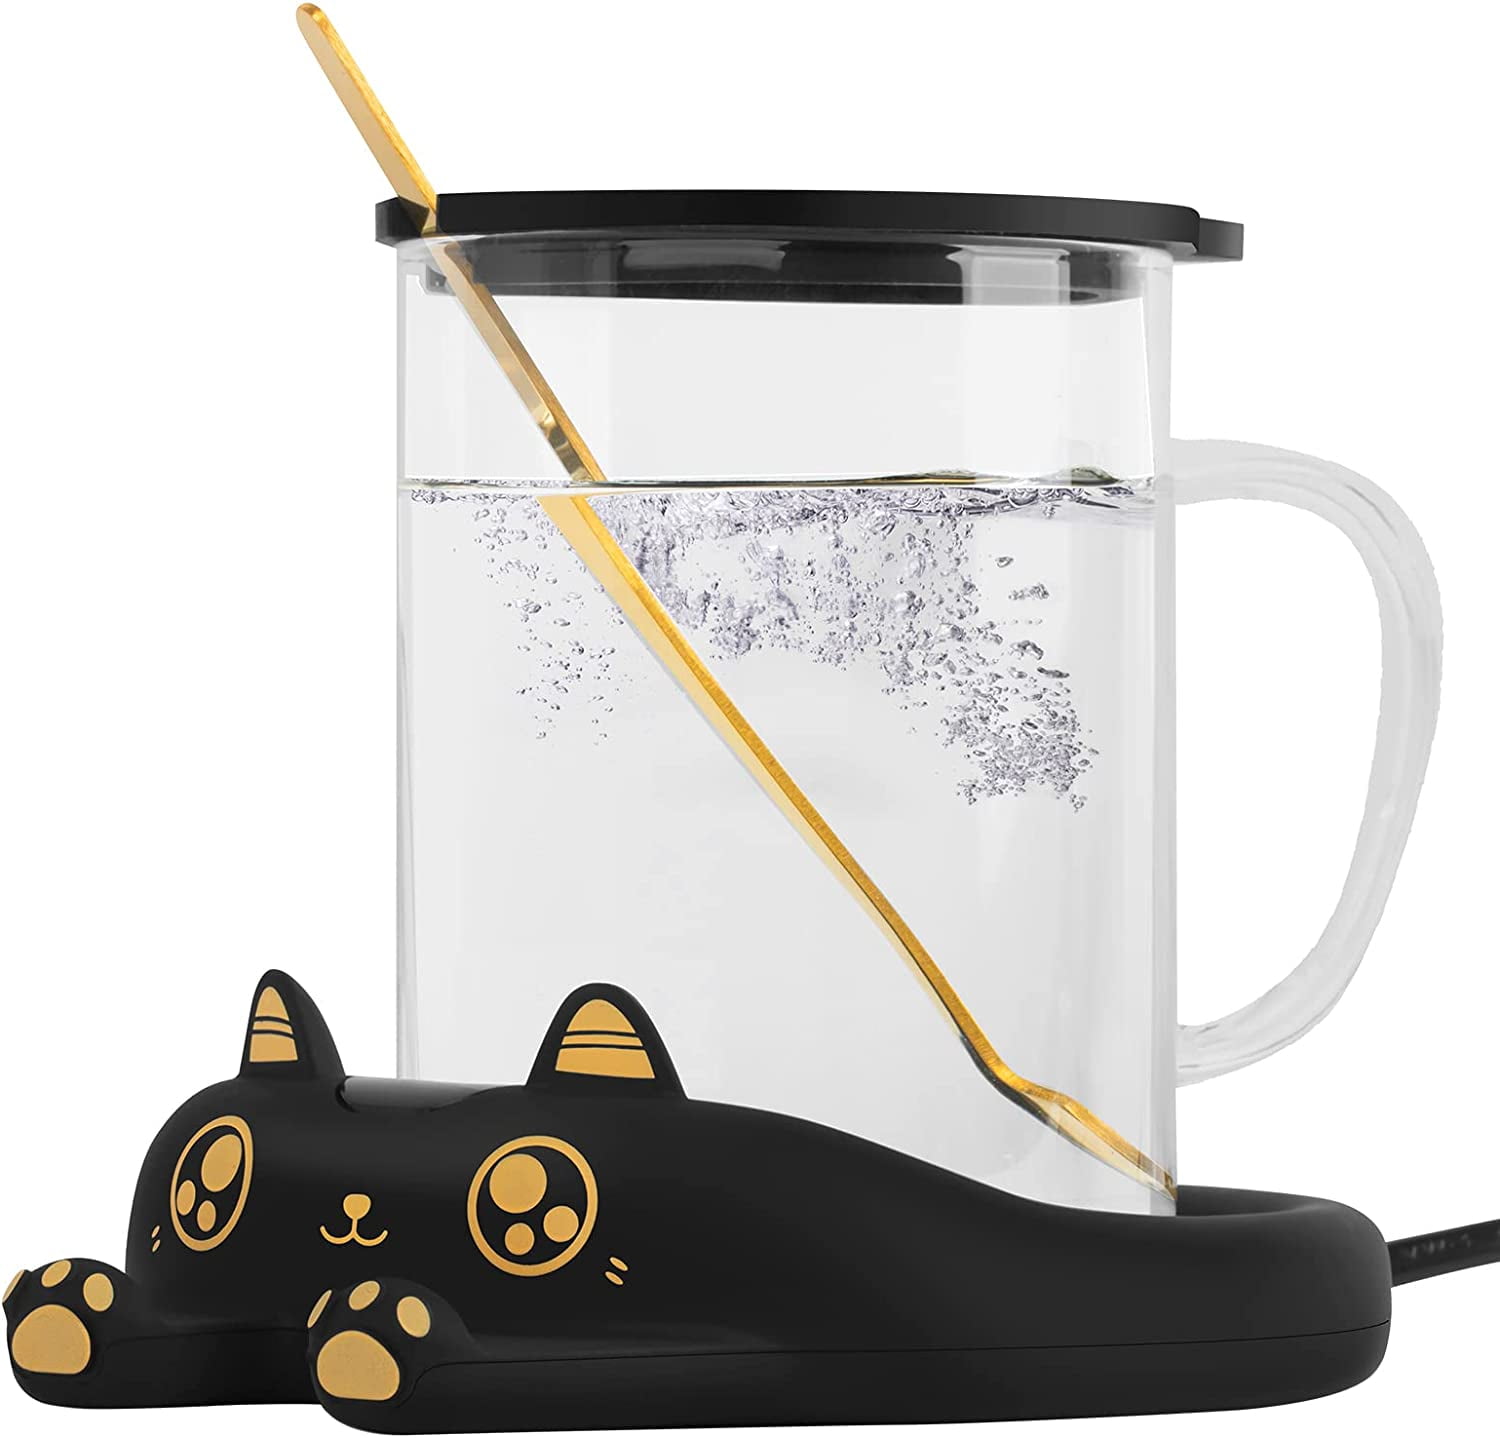 Gemdeck Cute Cat Coffee Milk Mug Warmer USB Electric Cup Warmer